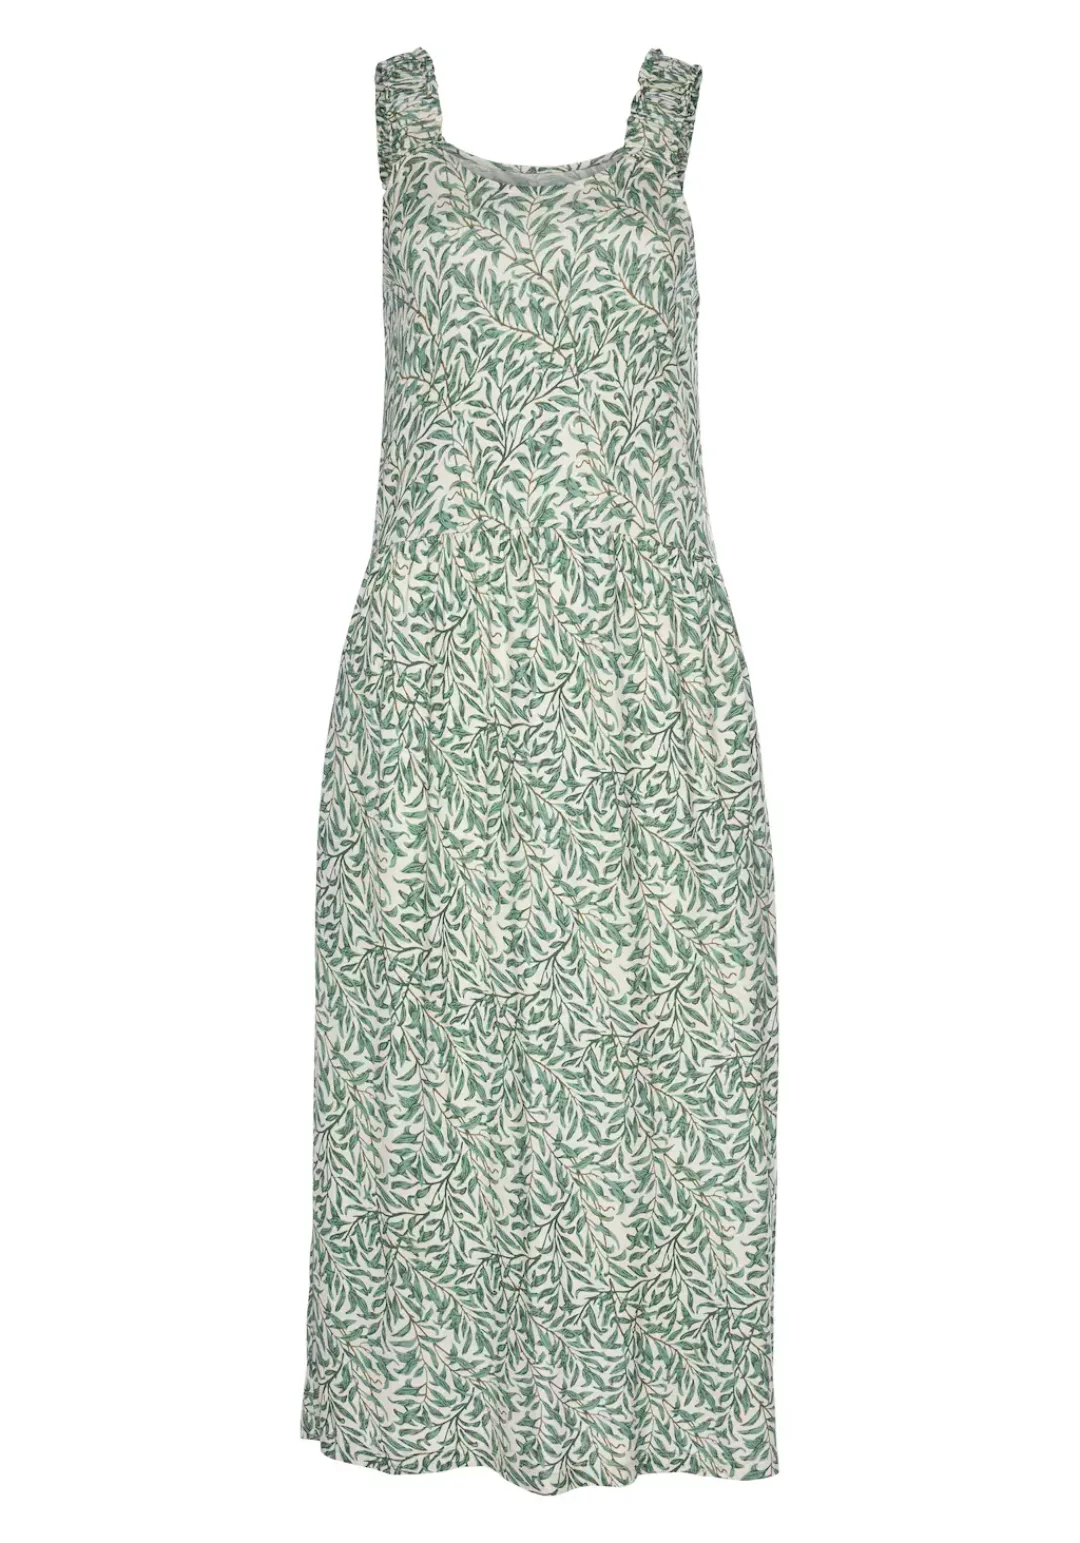 Beachtime Jerseykleid mit Blätterdruck und Taschen, leichtes Strandkleid, S günstig online kaufen